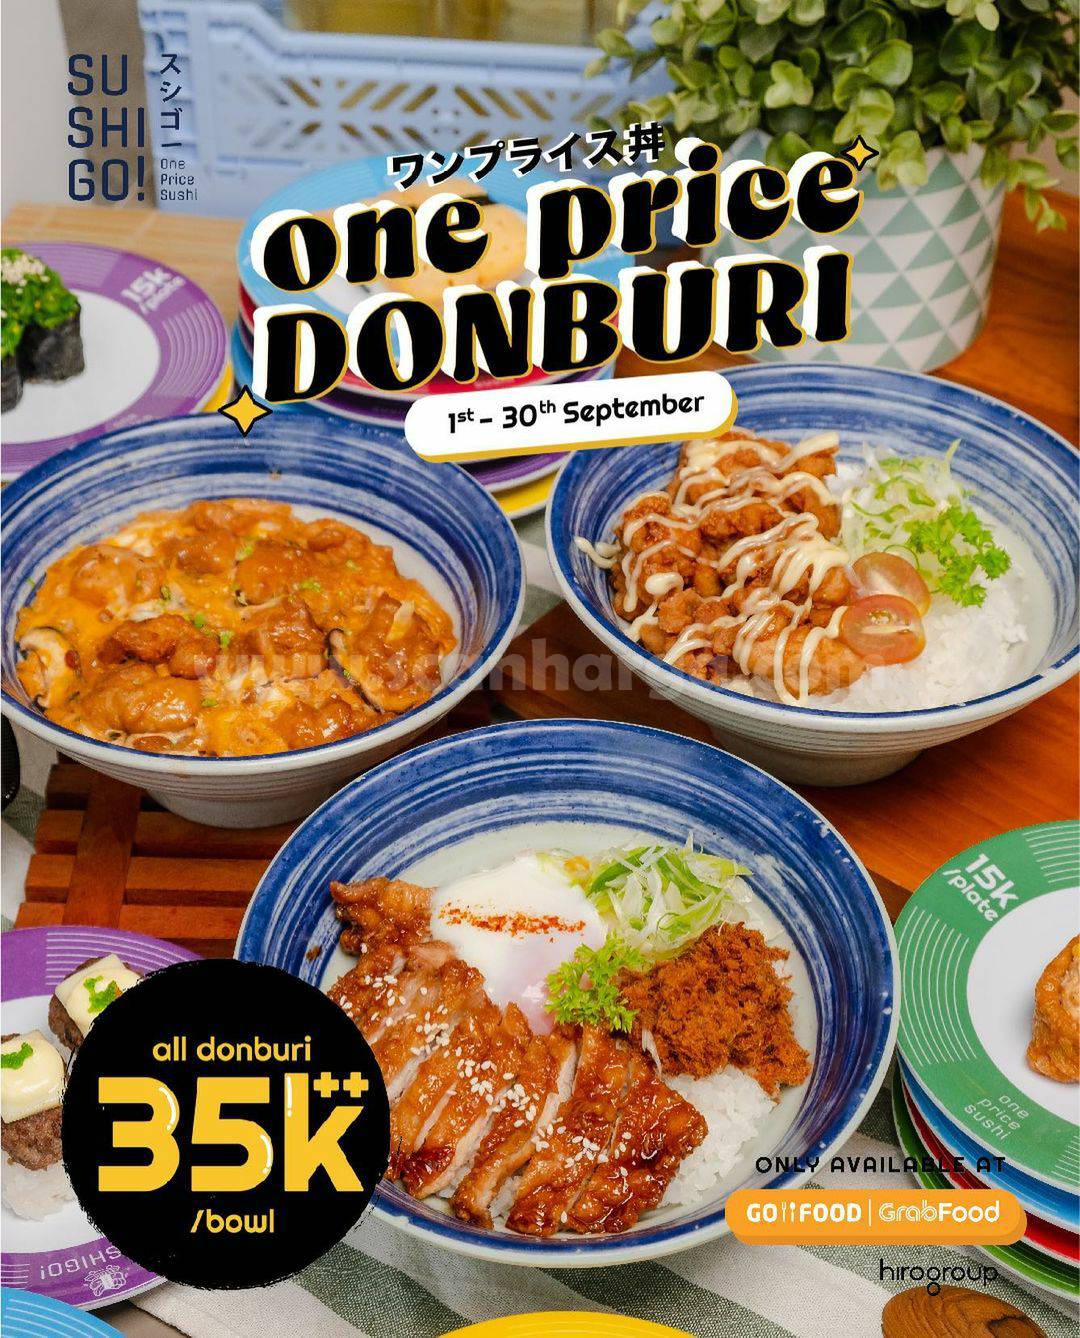 Promo SUSHI GO! DONBURI ONE PRICE – Spesial SATU HARGA Rp. 35.000++